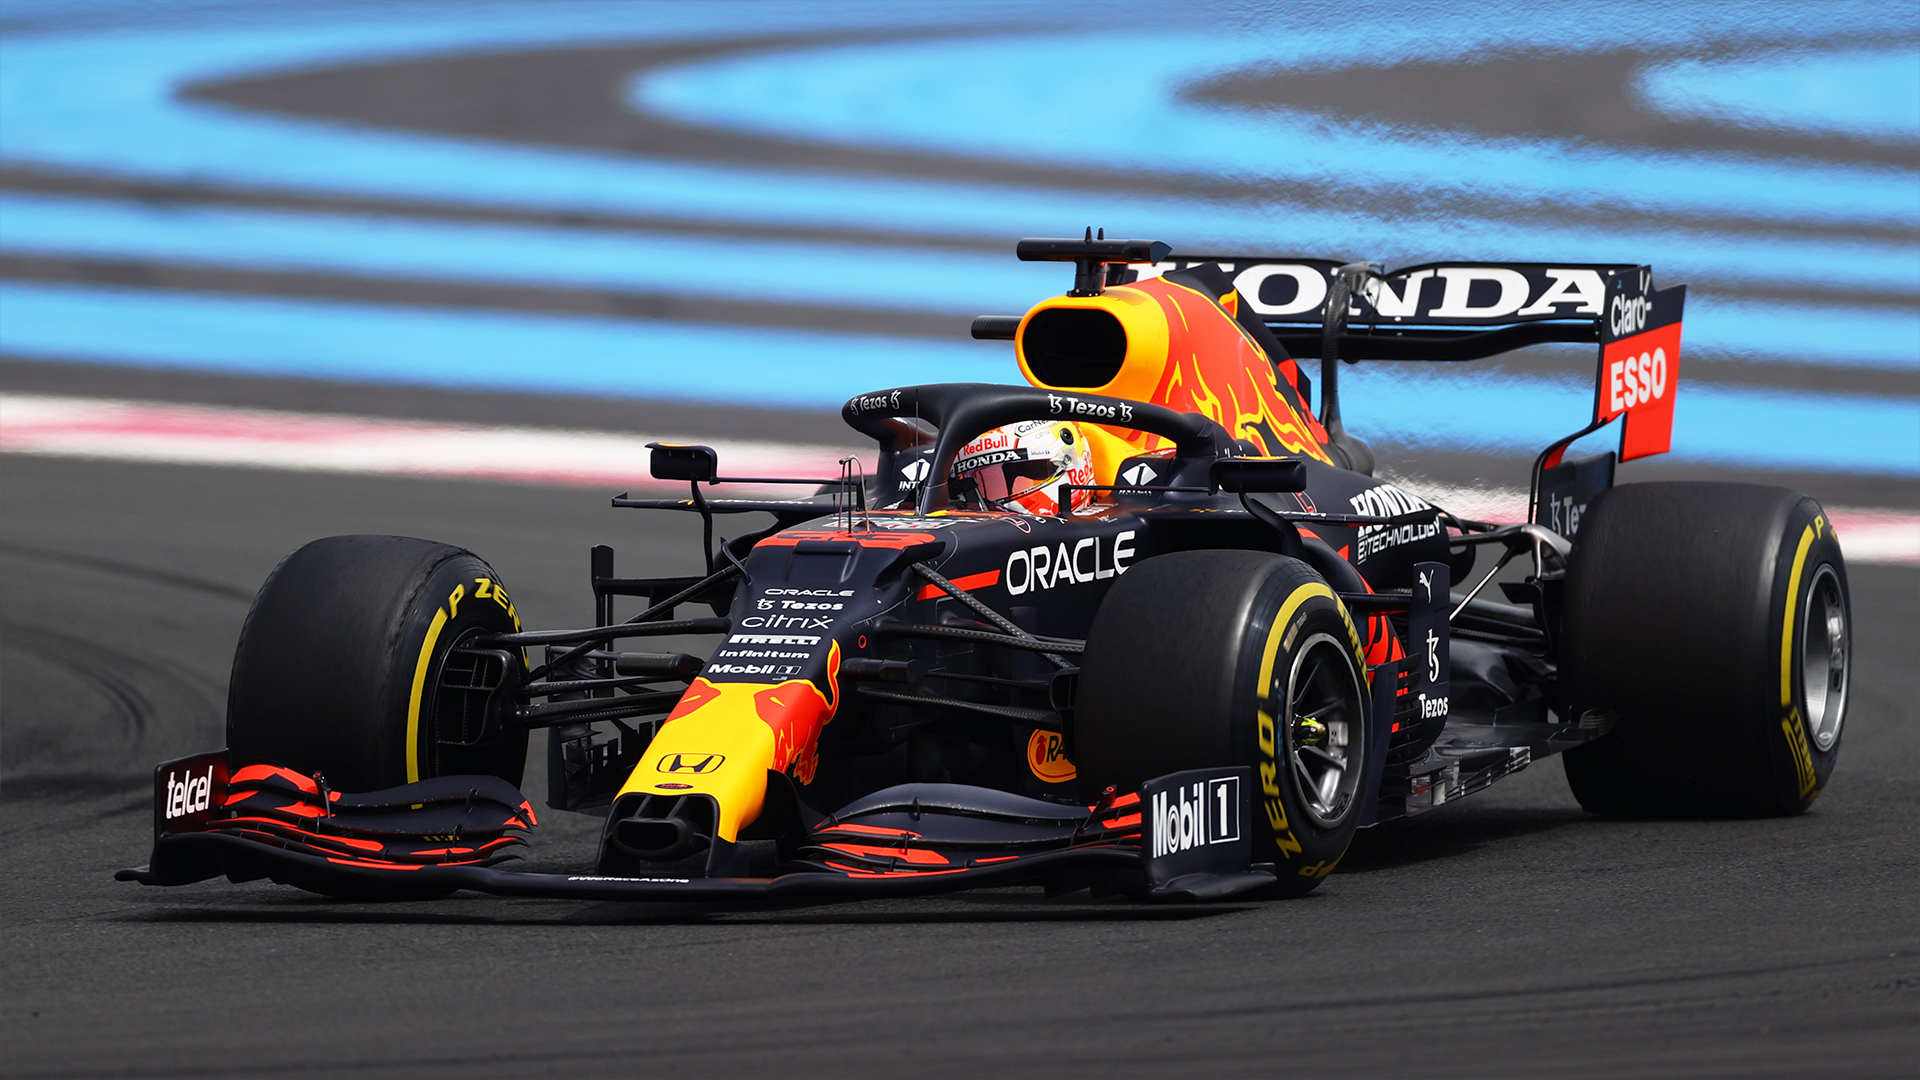 F1 - Max Verstappen en patron au Grand Prix de France